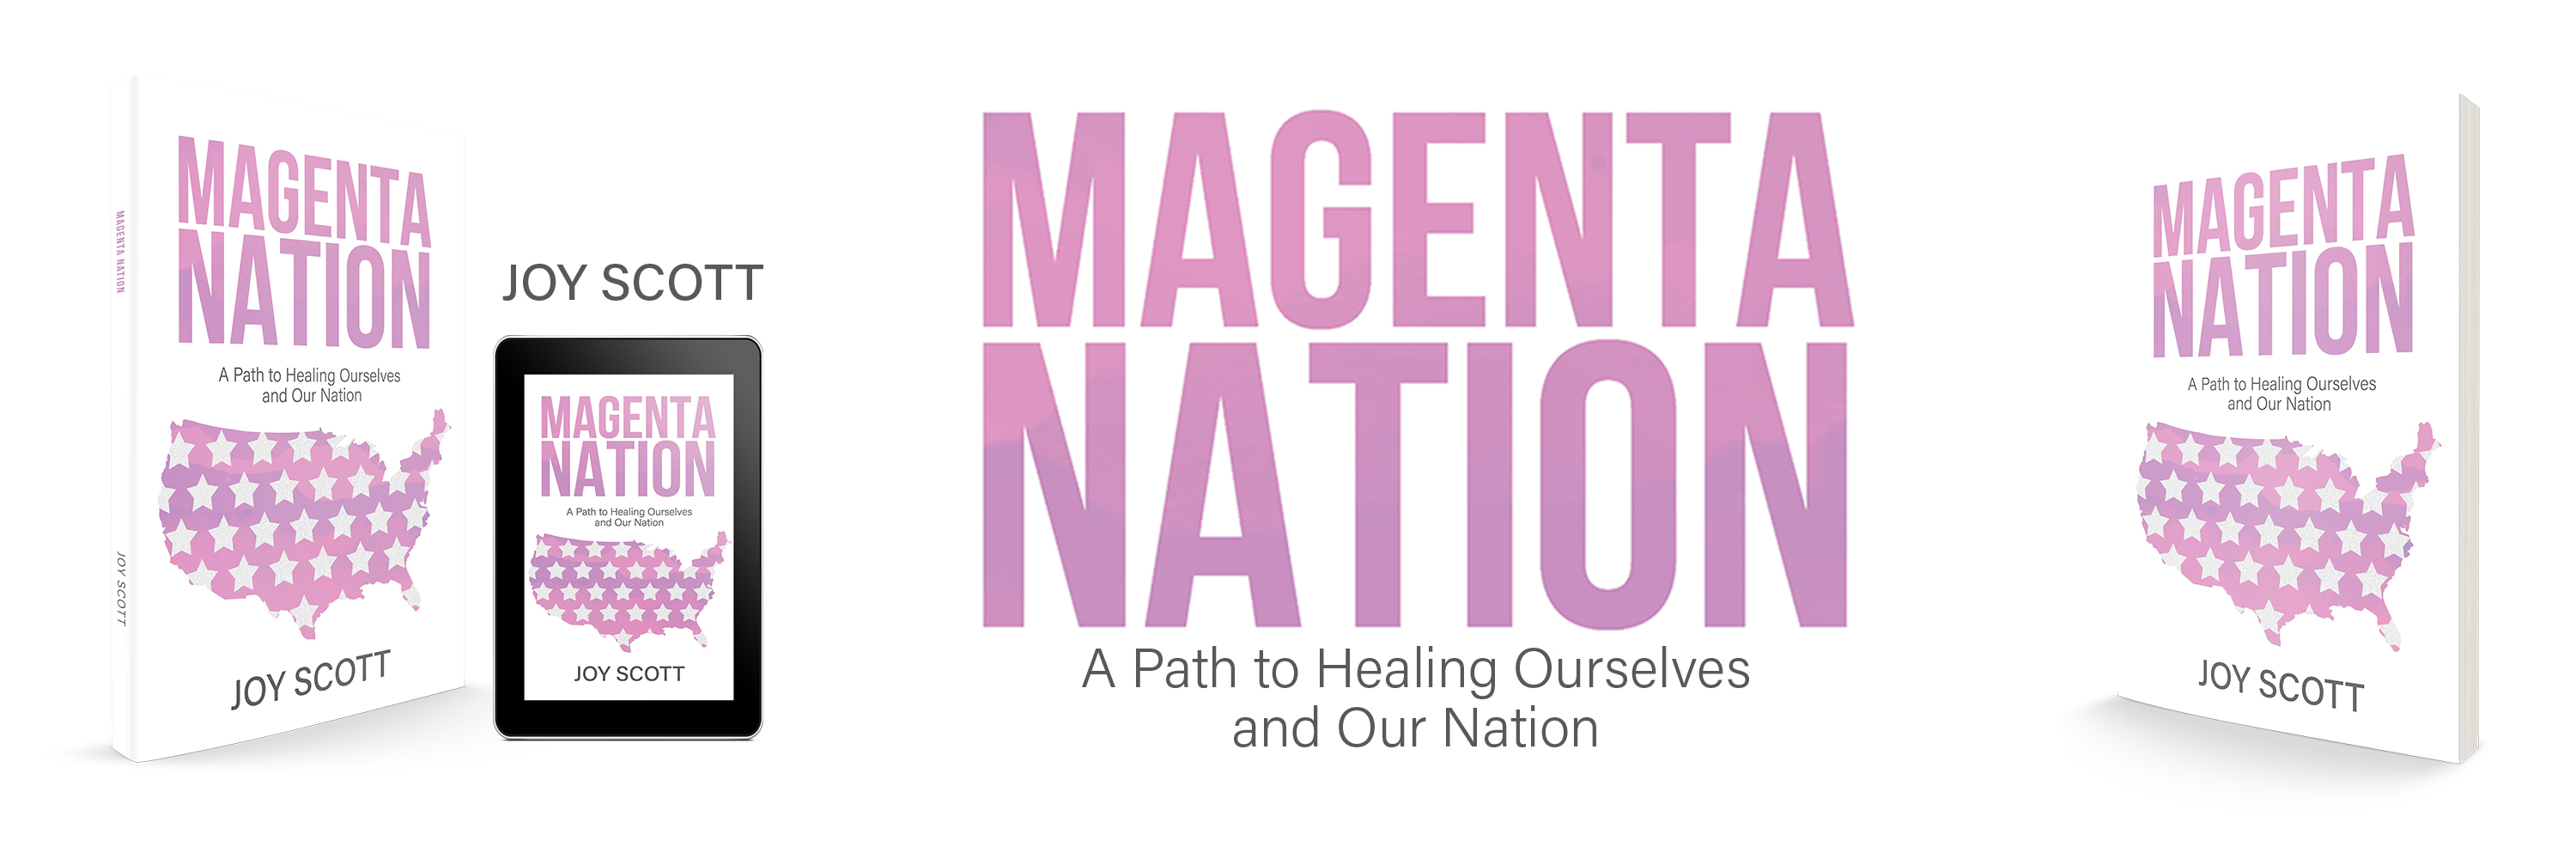 Magenta Nation